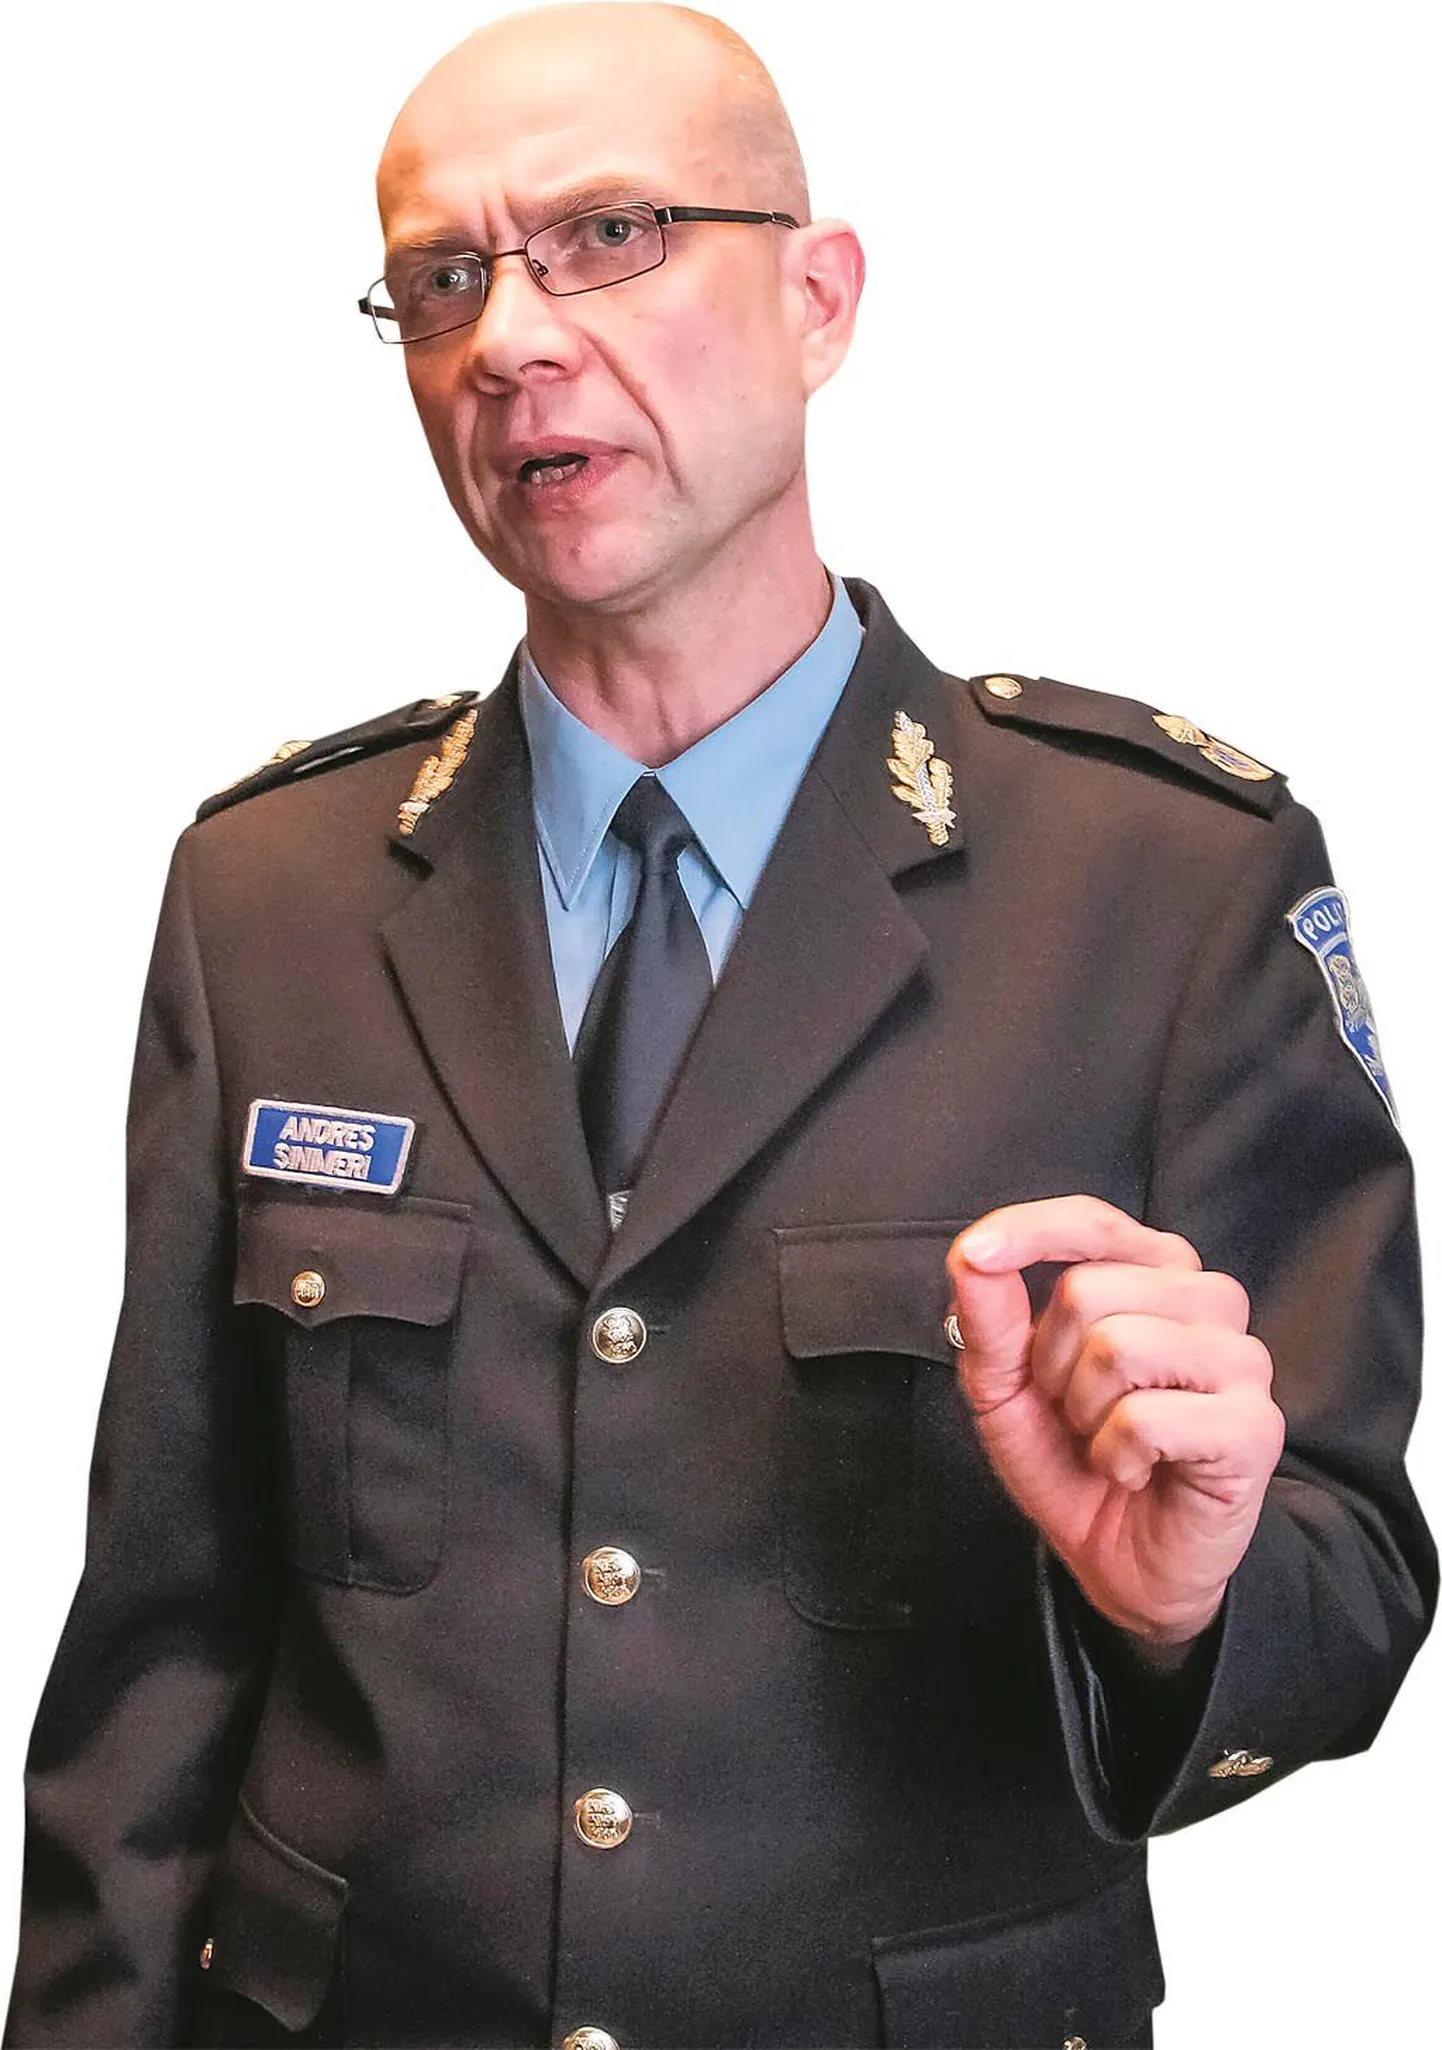 Pärnu politseijaoskonna juht Andres Sinimeri tahab sel aastal pöörata enam tähelepanu liikluses toimuvale, et vähendada hukkunute arvu.